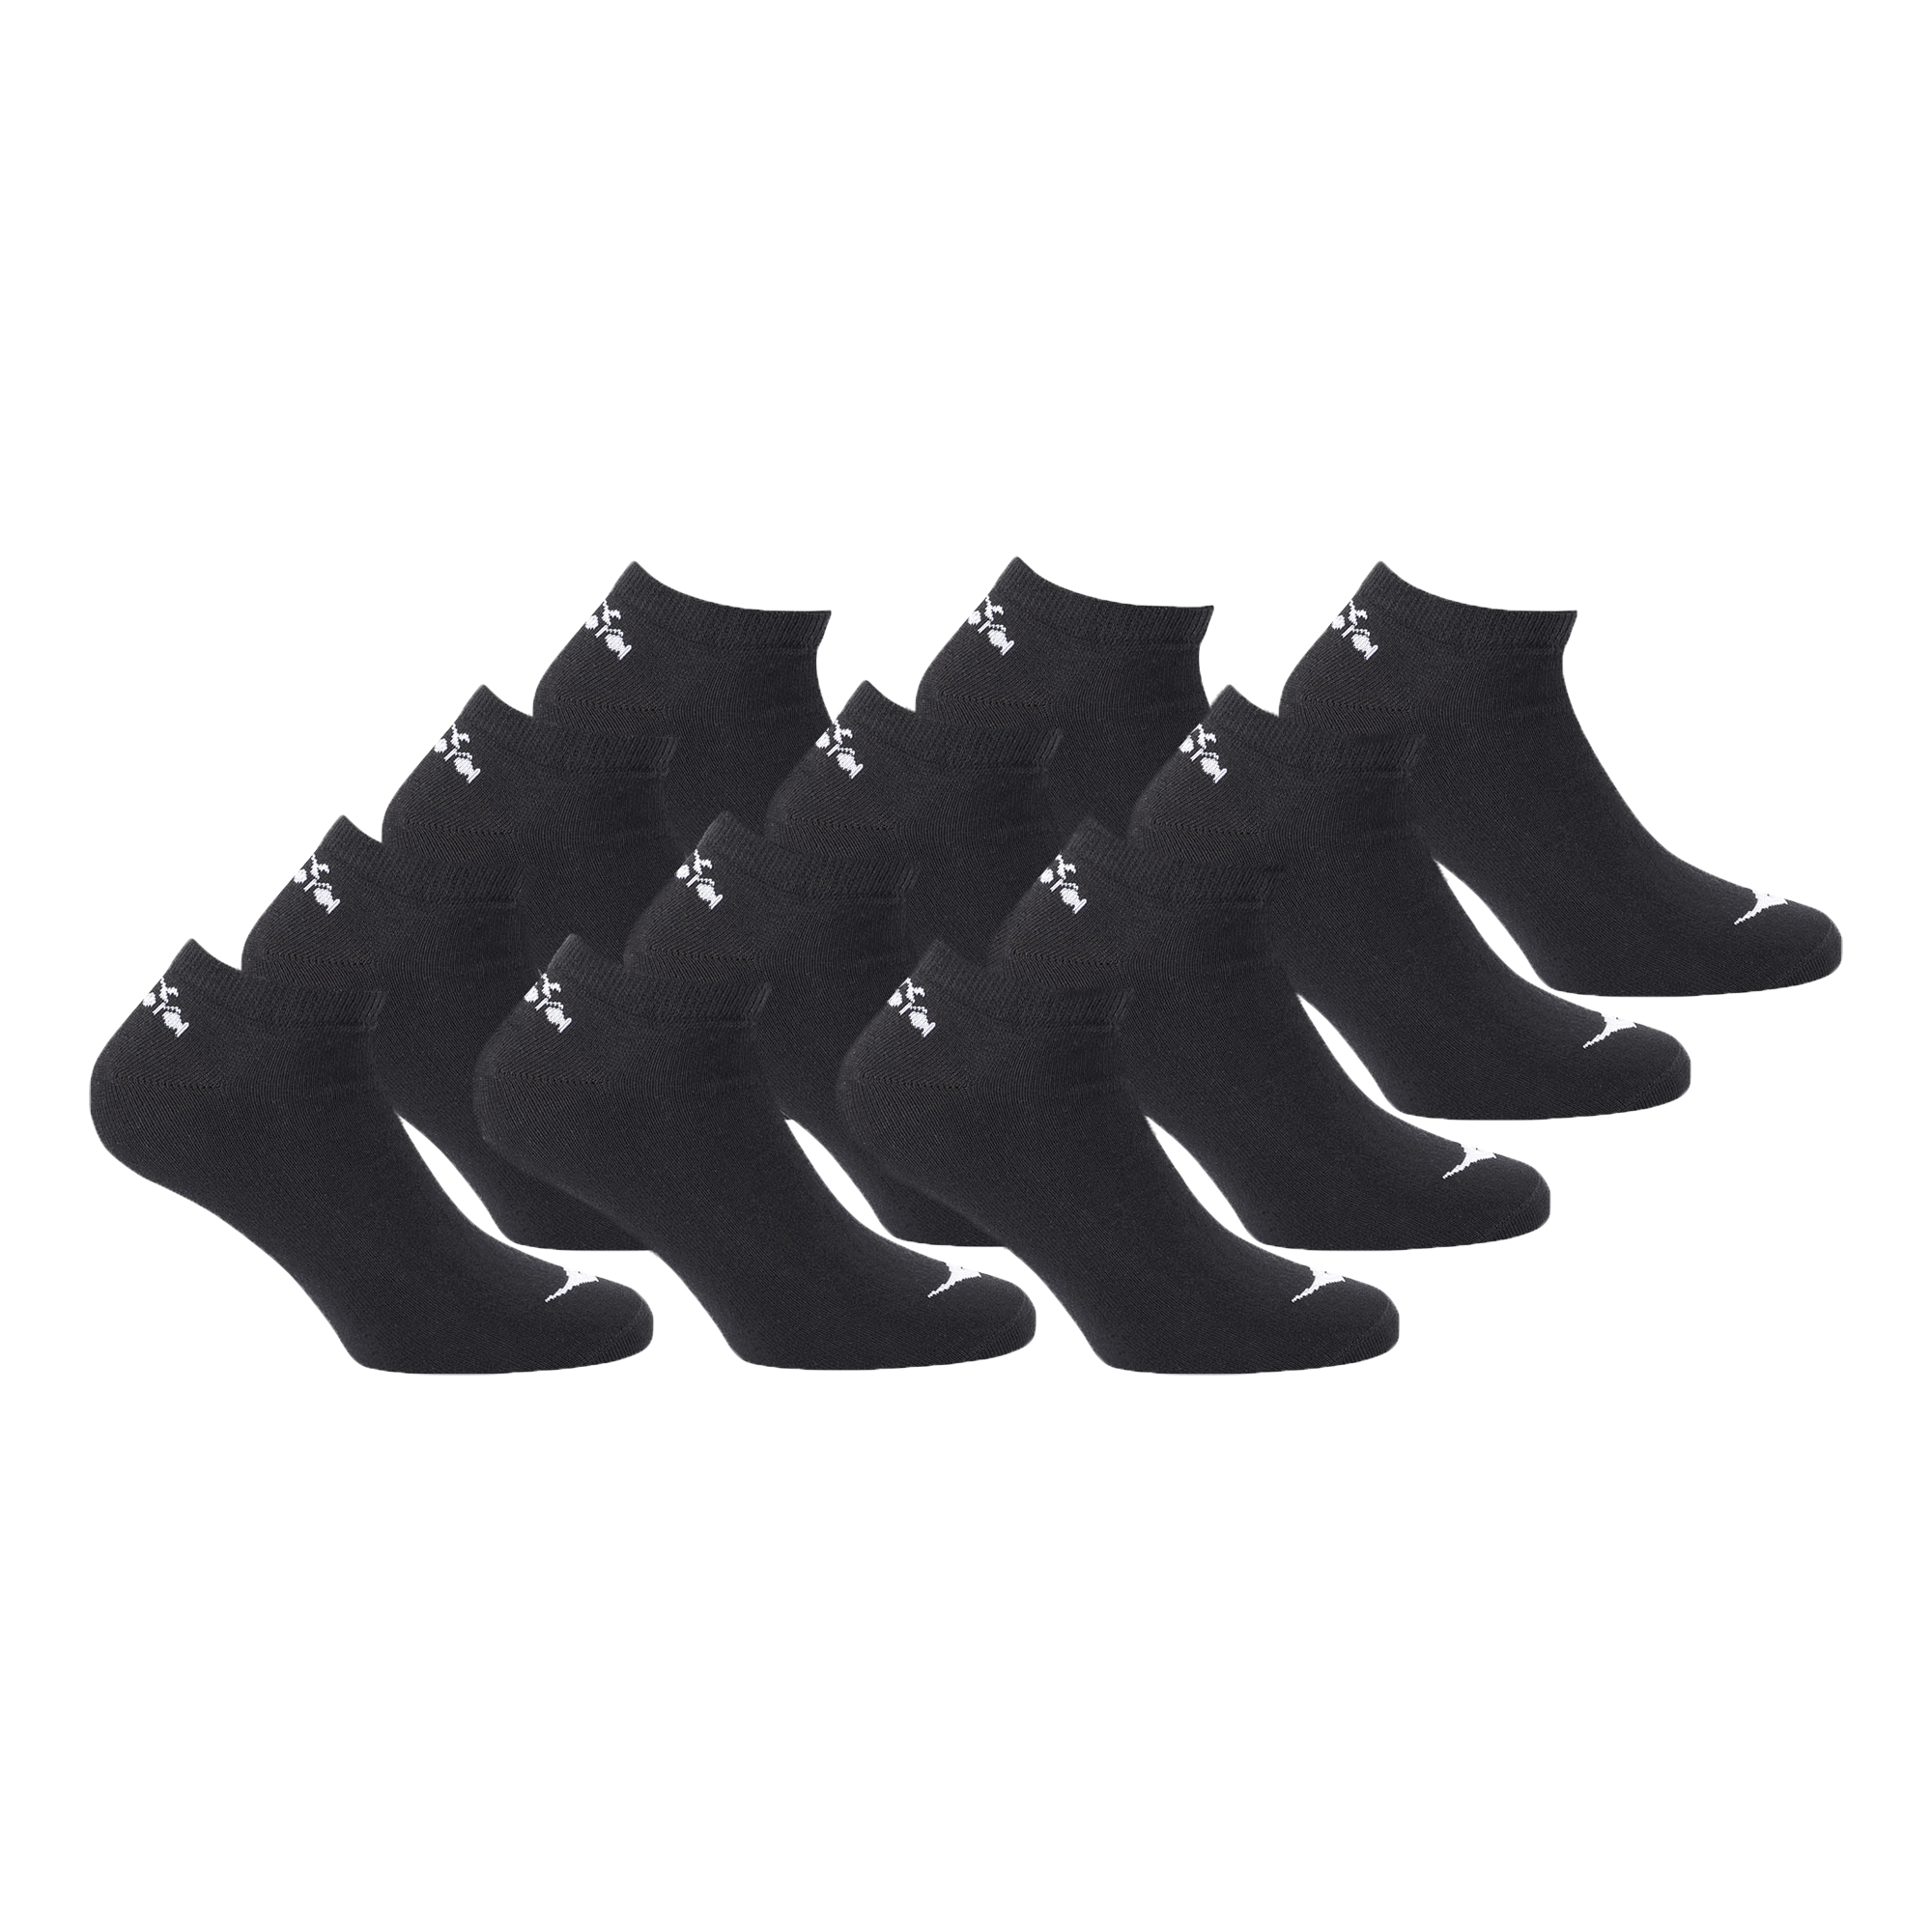 Chaussettes Diadora Sneaker Plain (Lot de 12 paires)